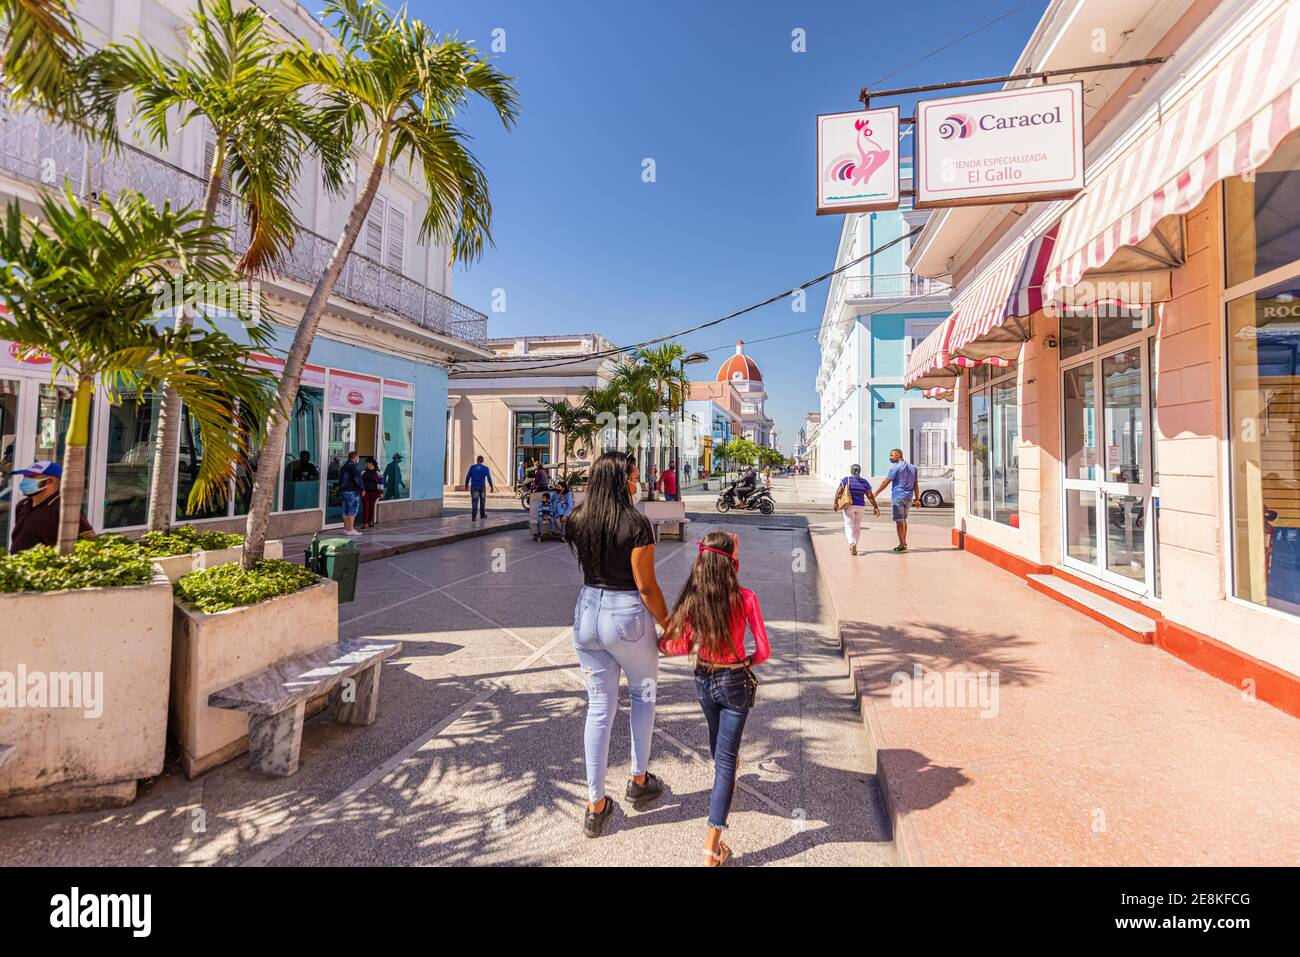 CIENFUEGOS, CUBA - GENNAIO 10: Avenida pedonale 54 (Boulevard) con la gente del posto. Cuba sta lottando per la mancanza di turisti e per la riforma monetaria. Foto Stock